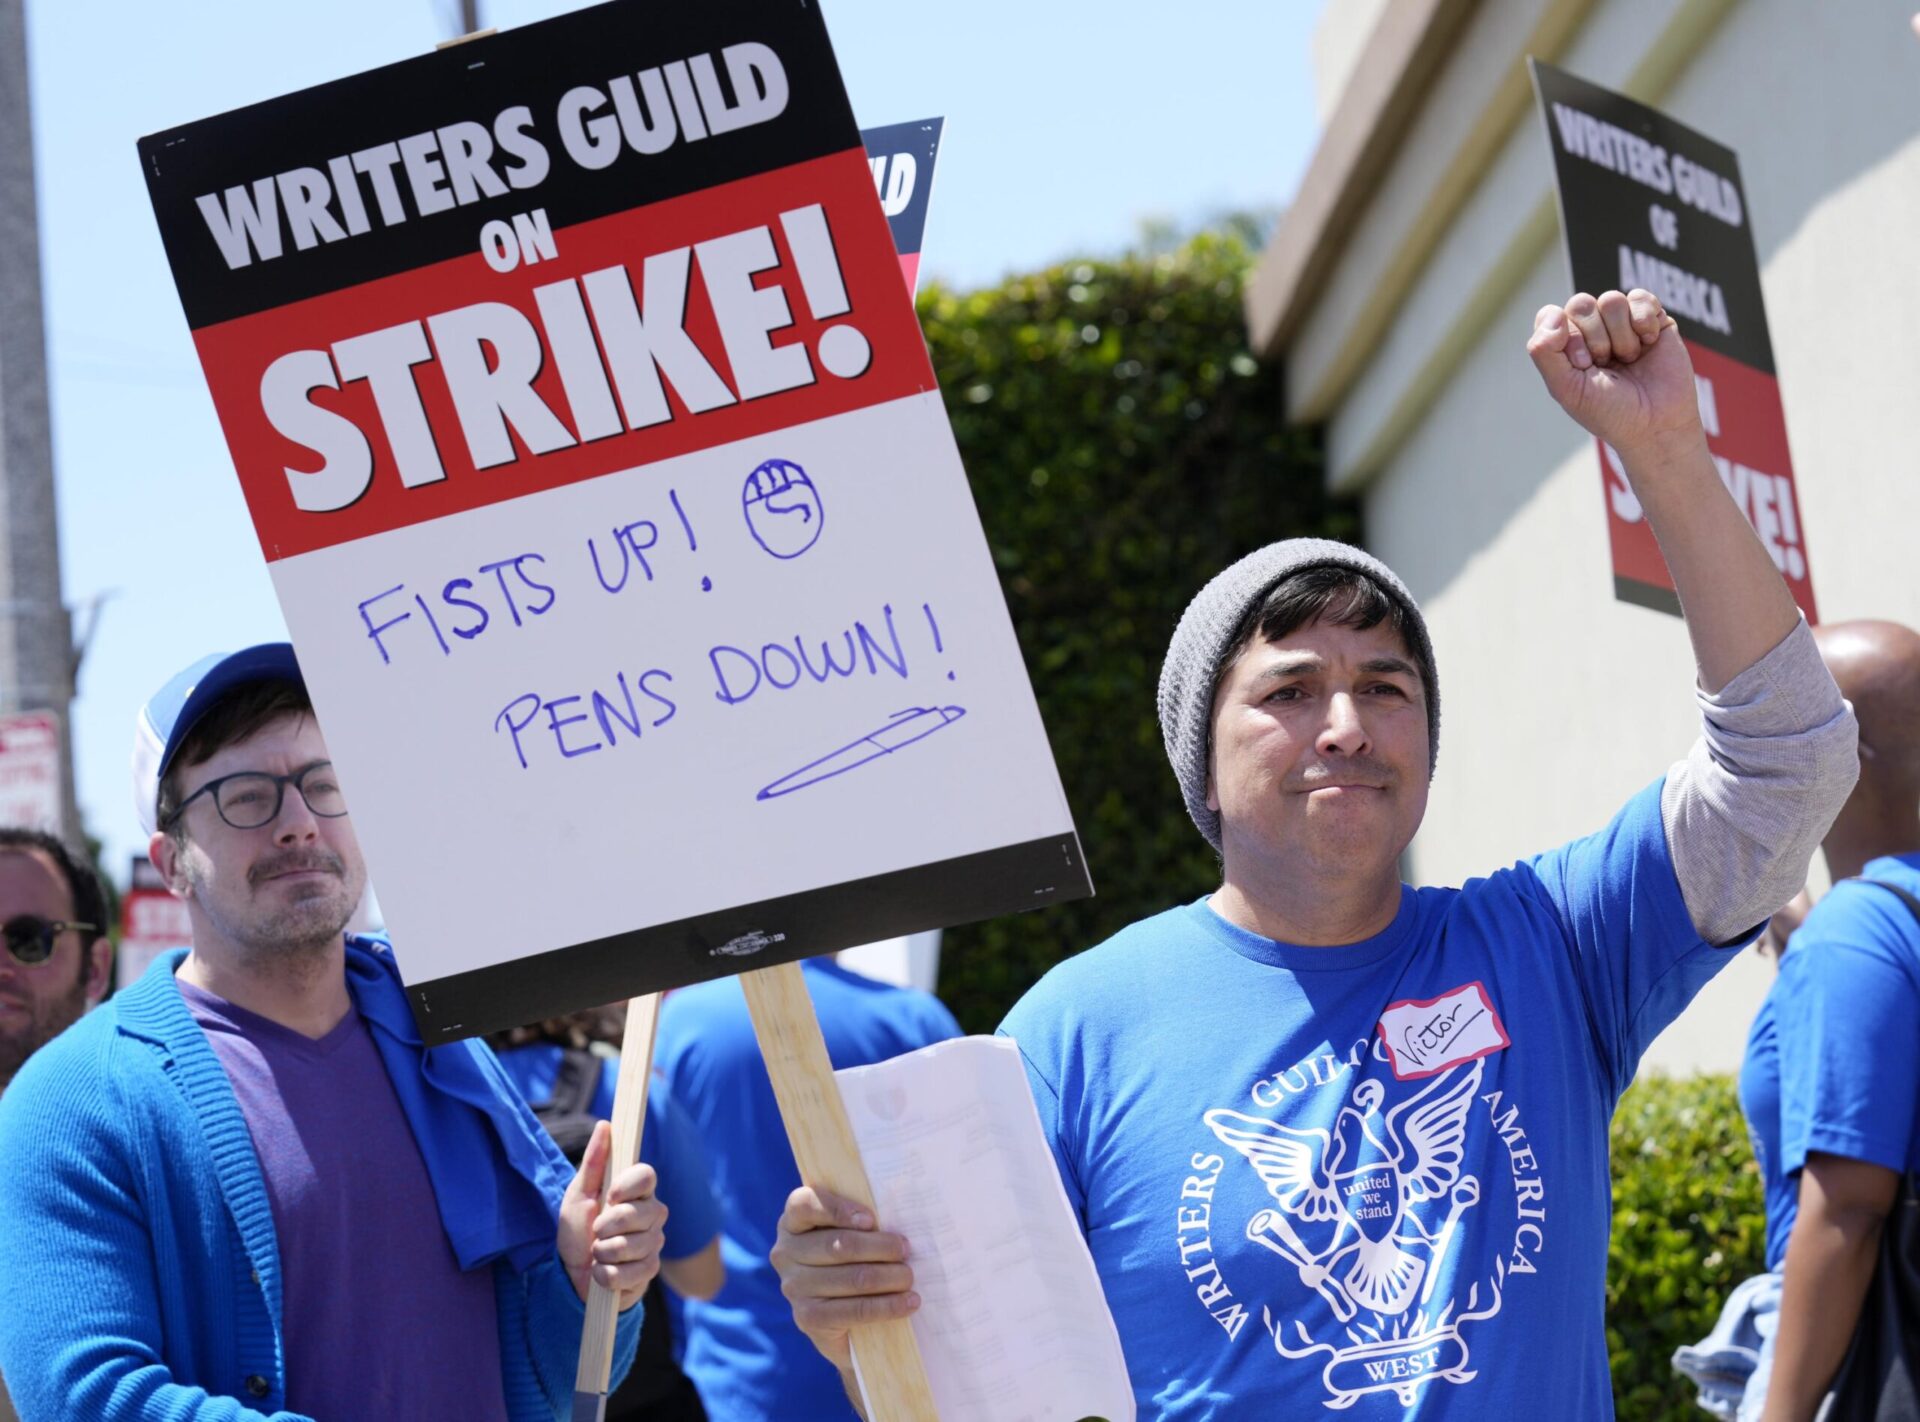 La huelga de escritores parece ser una lucha larga, mientras Hollywood se prepara